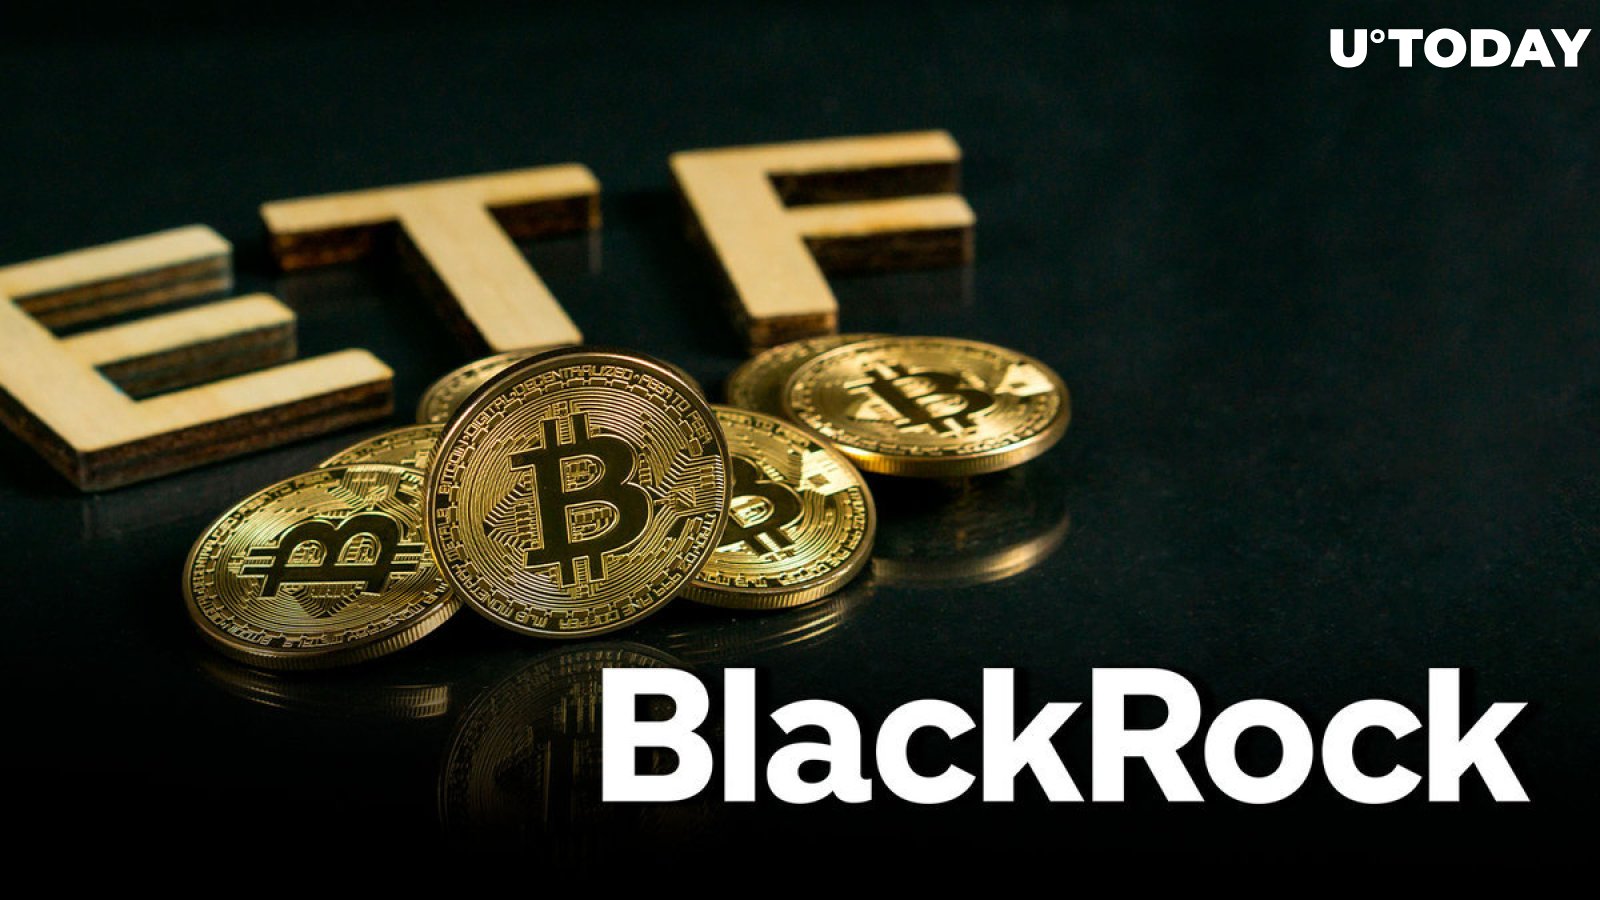 BlackRock's Bitcoin ETF Just Hit Major Milestone